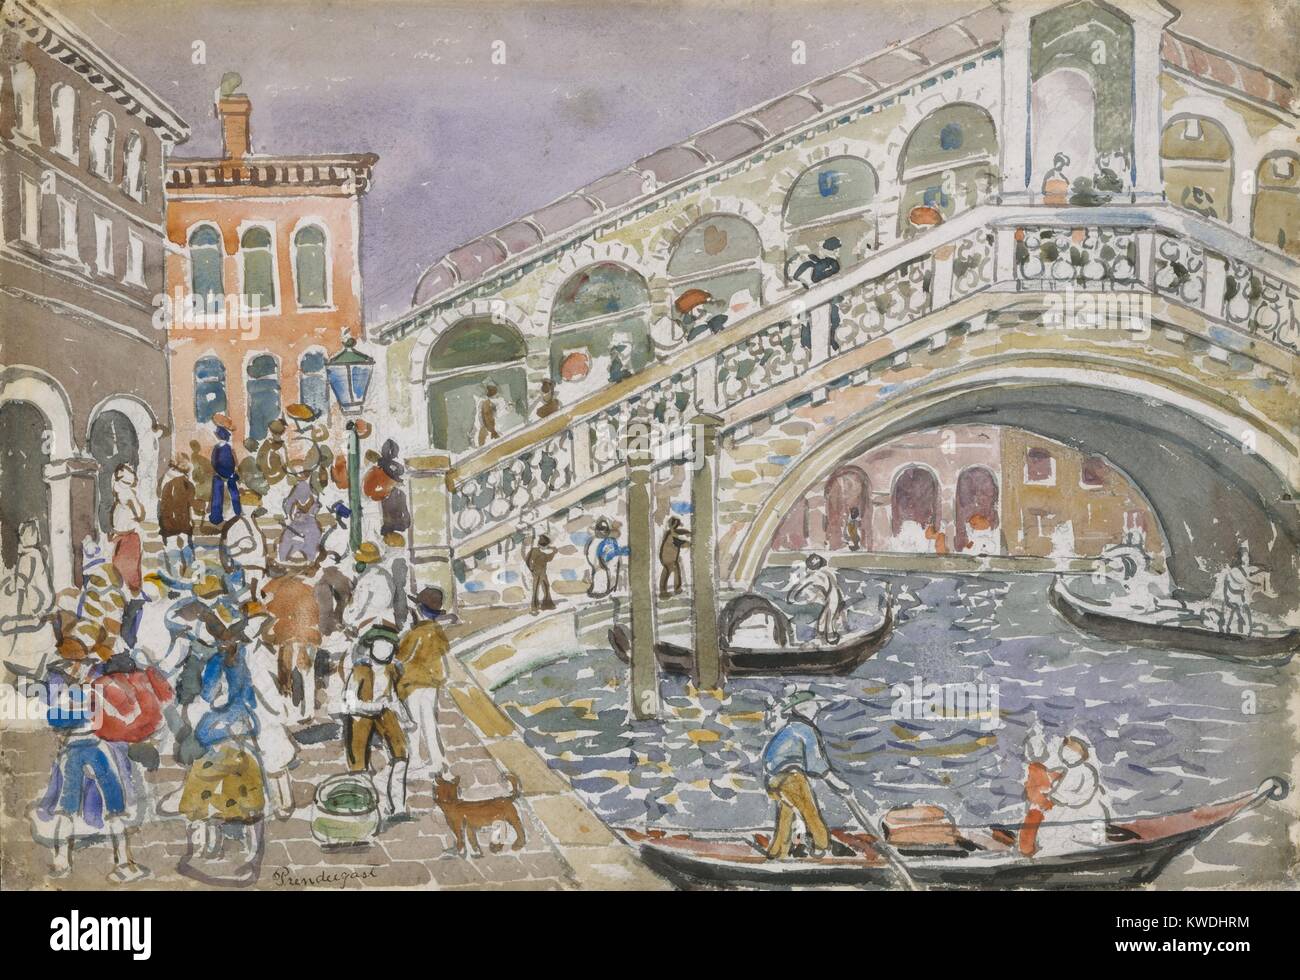 RIALTO BRIDGE (Brücke, Venedig), von Maurice Brazil Prendergast, 1911-12, Kanadisch-Aquarell. Malen mit Gouache und Kohle auf Papier. Dies wurde während seiner zweiten Reise nach Venedig im persönlichen Stil, den er von Post Impressionismus (BSLOC 2017 7 148) entwickelt, lackiert Stockfoto